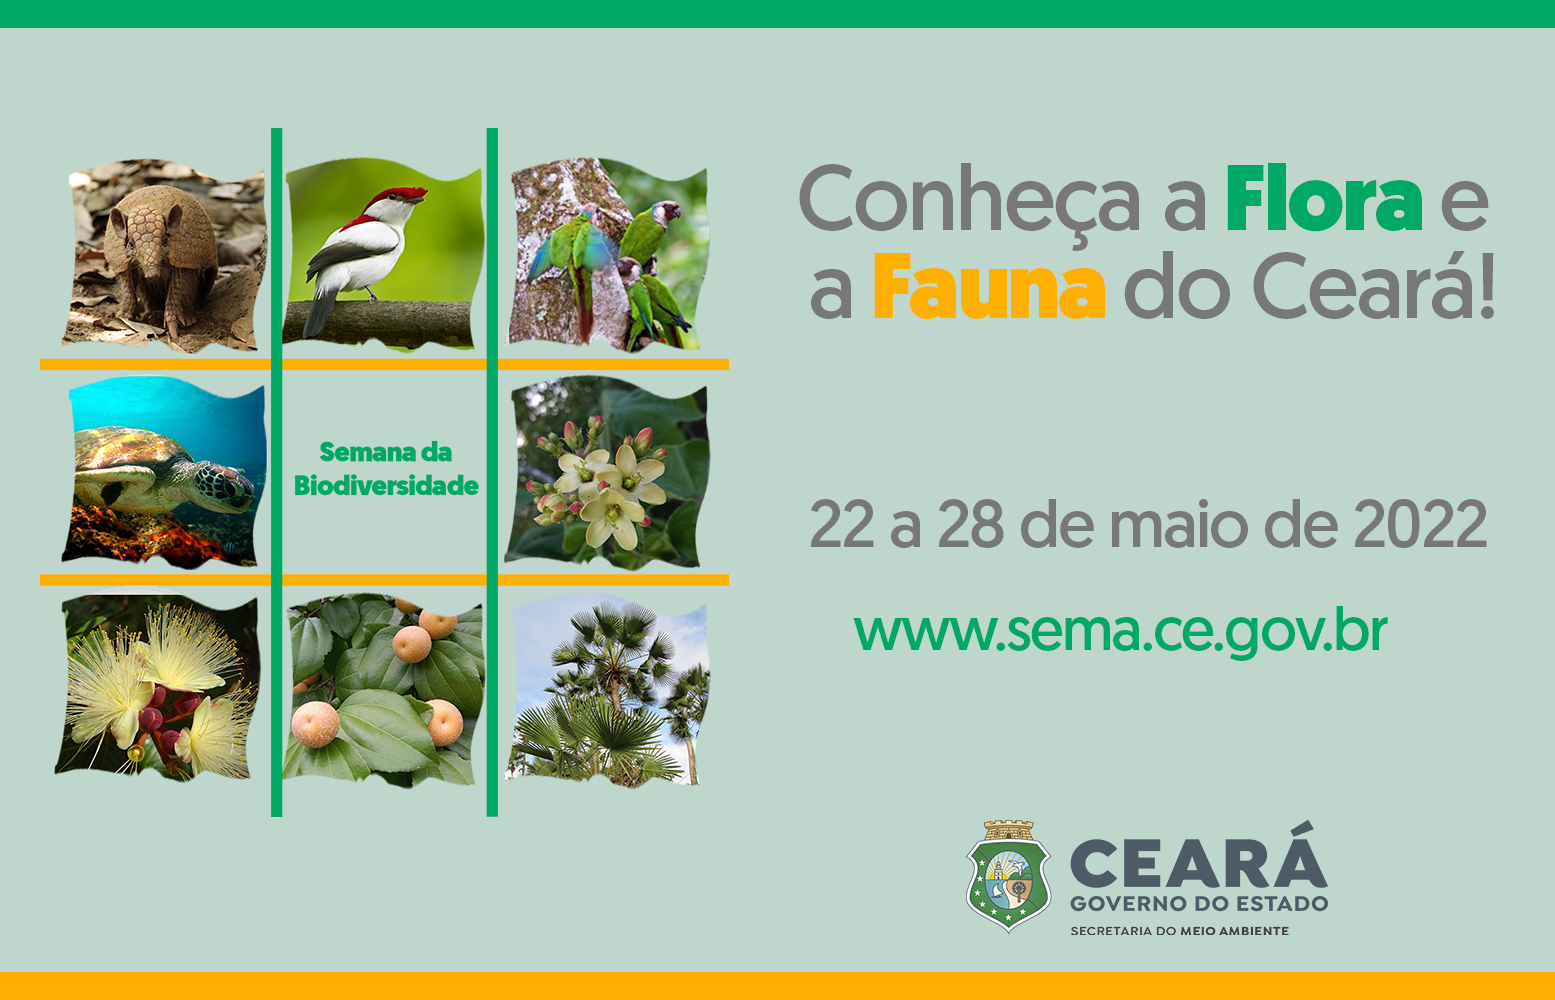 Semana da Biodiversidade convida: “Conheça a Flora e Fauna do Ceará”